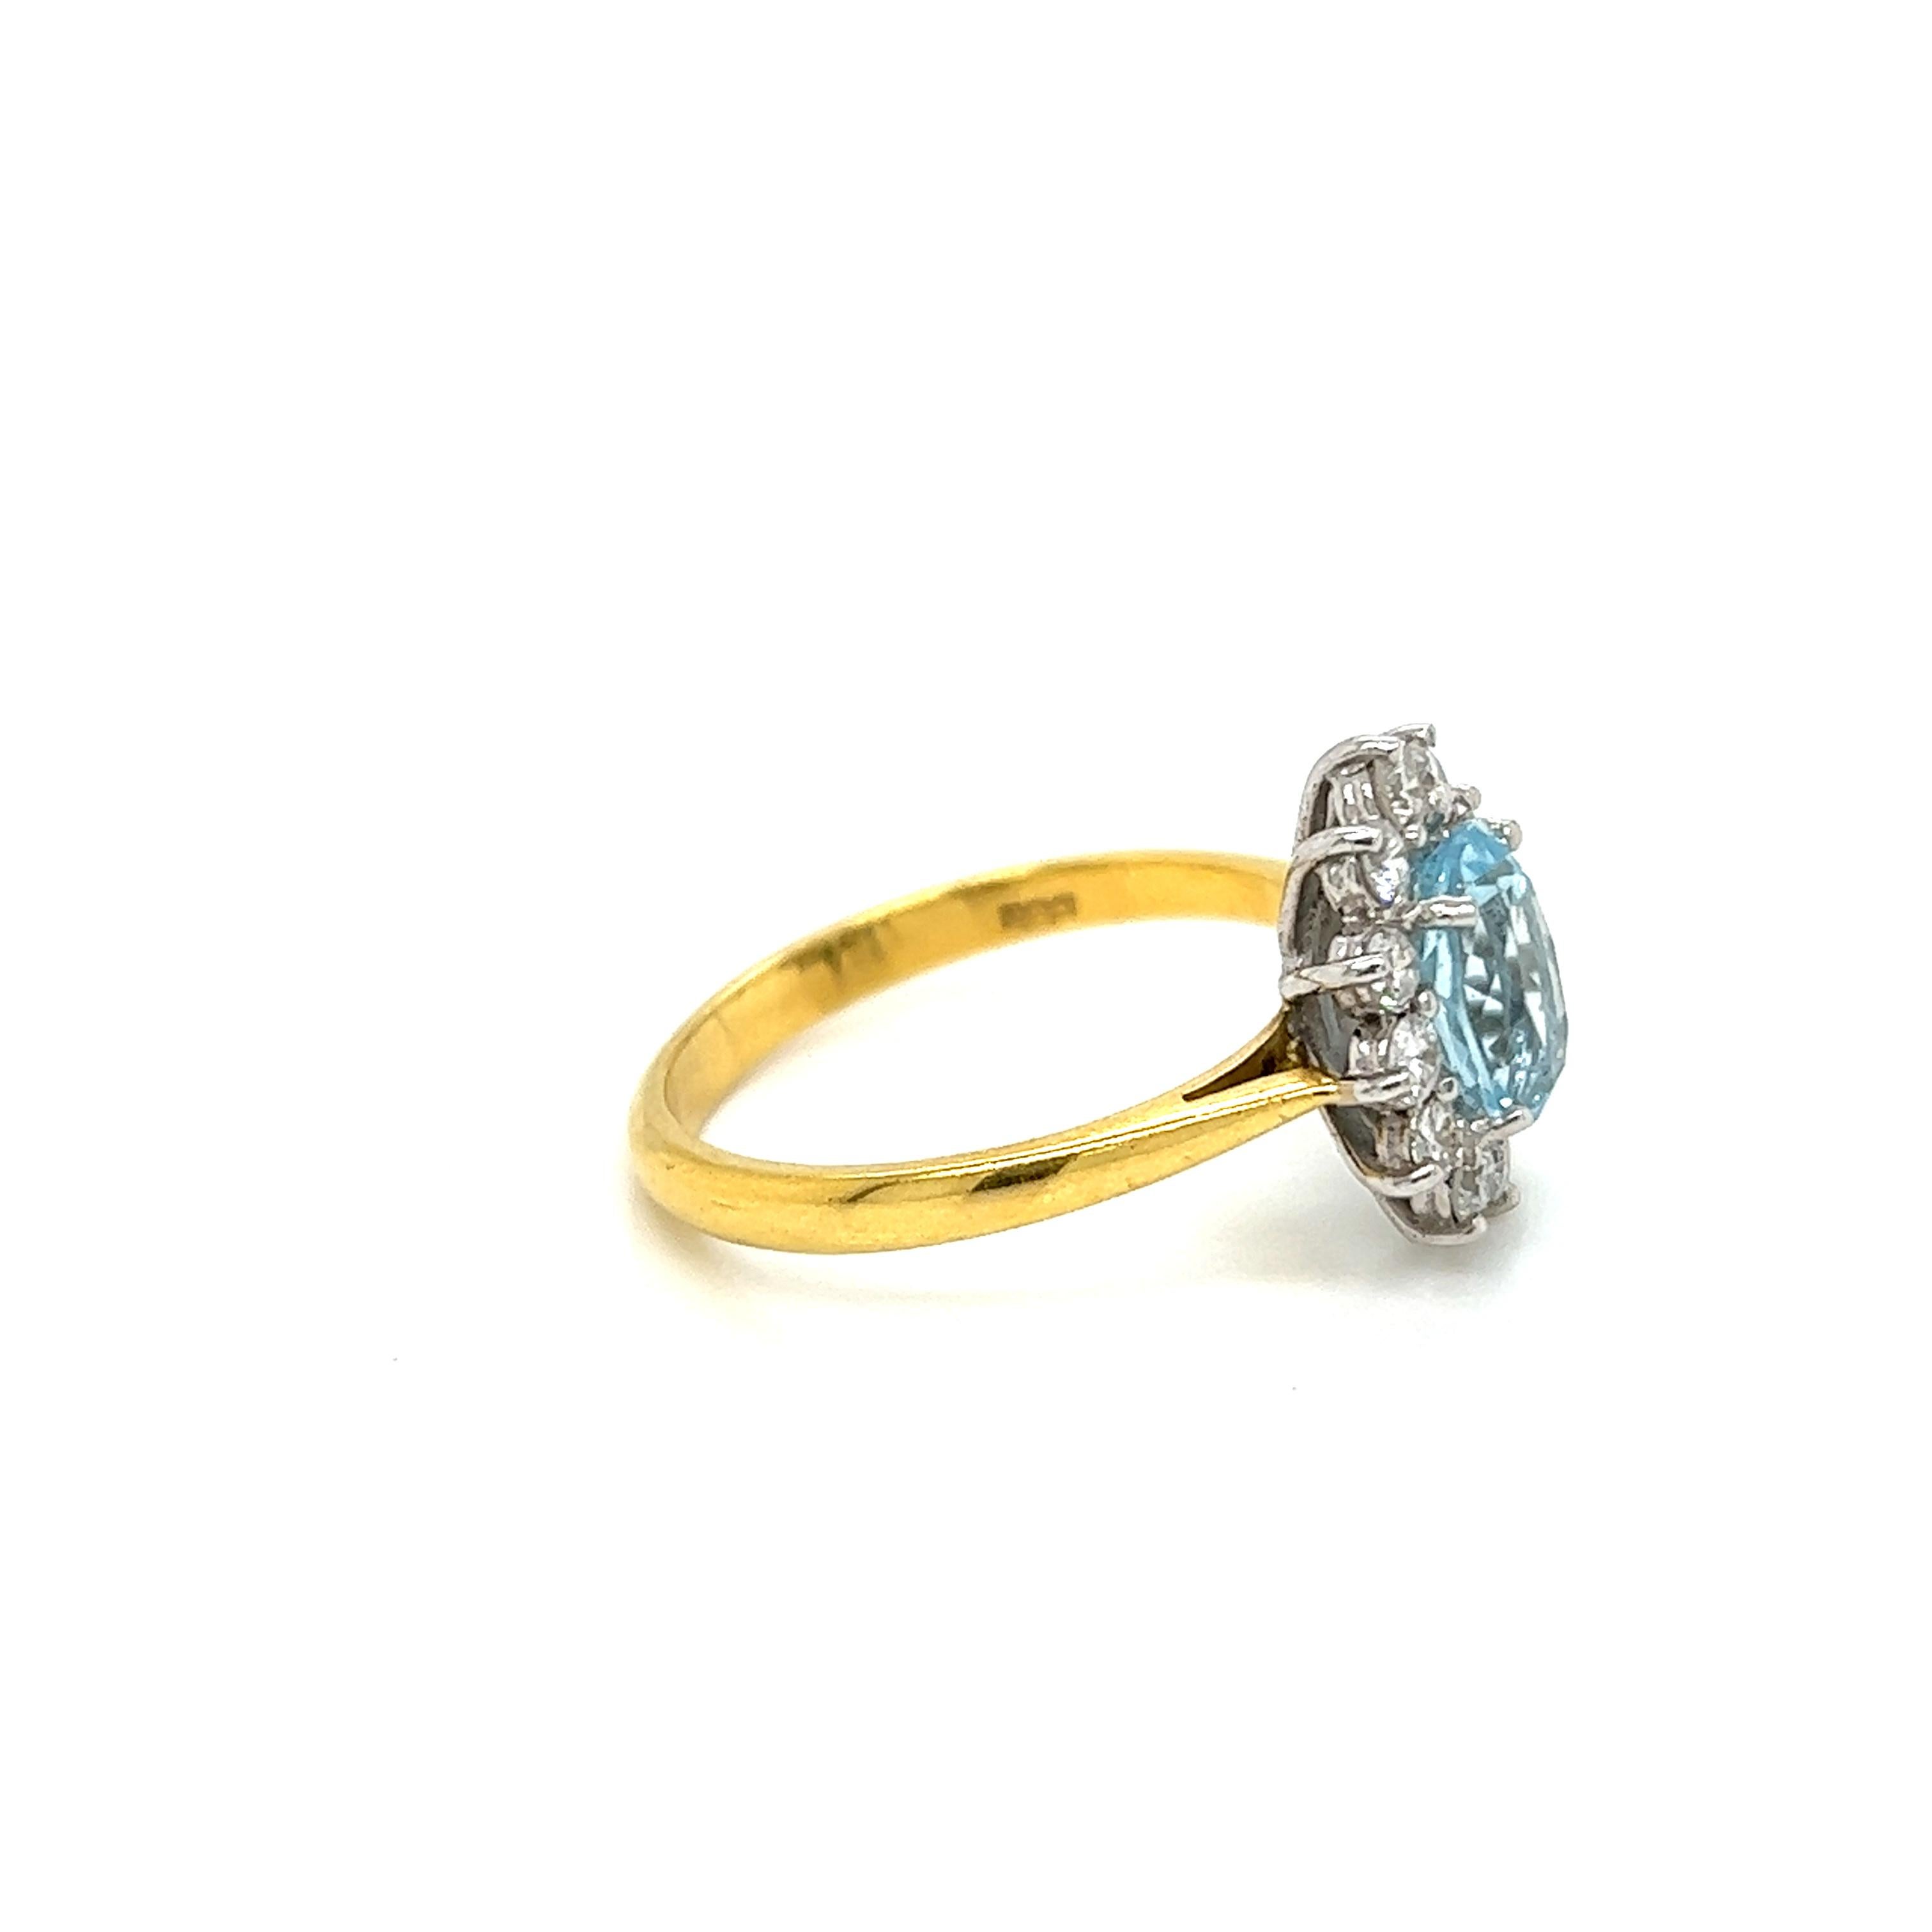 1.2 carat oval diamond ring